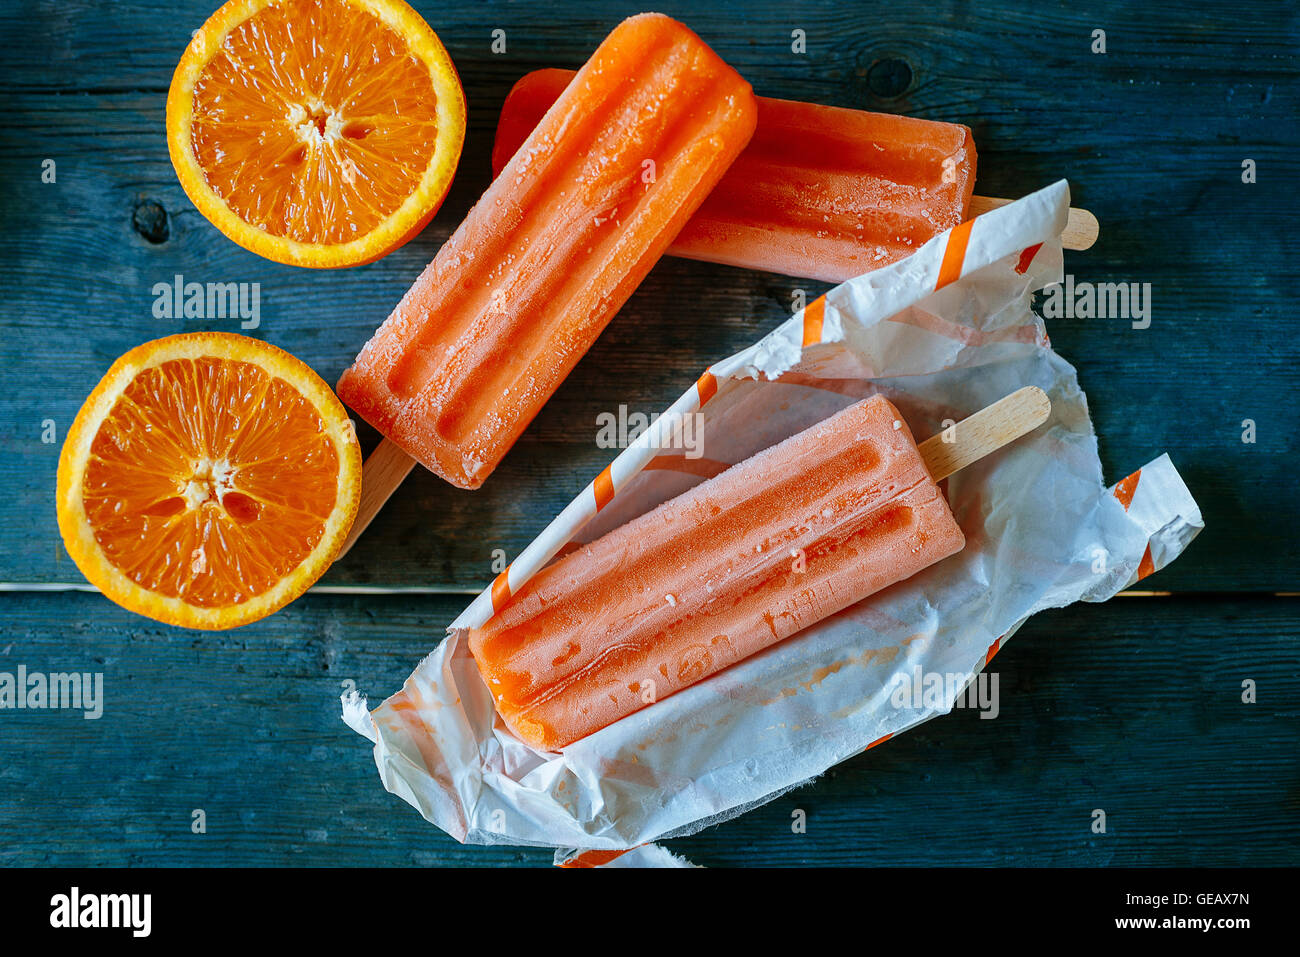 La neige Orange la crème glacée dans des emballages et des oranges sur bois Banque D'Images